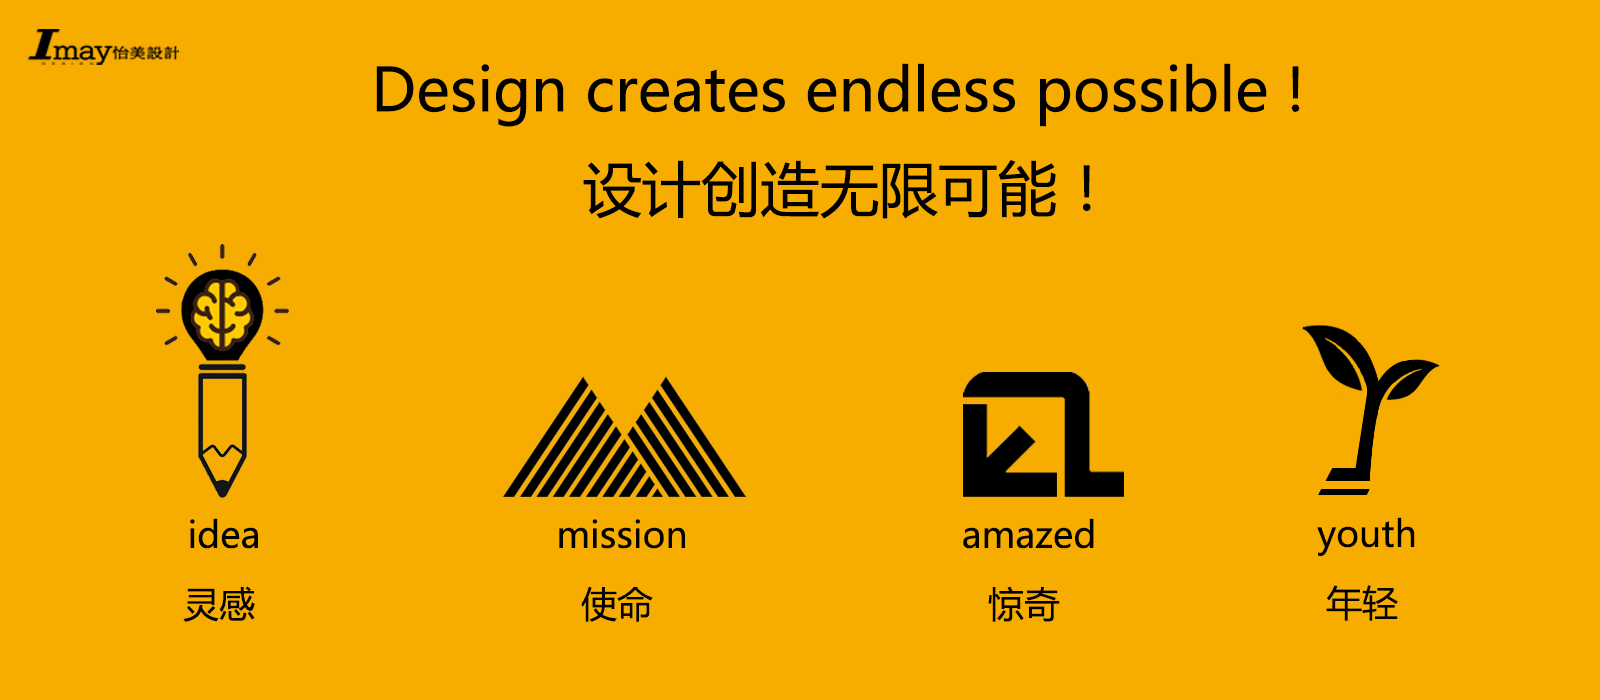 深圳工业设计产品设计外观设计公司;怡美工业设计